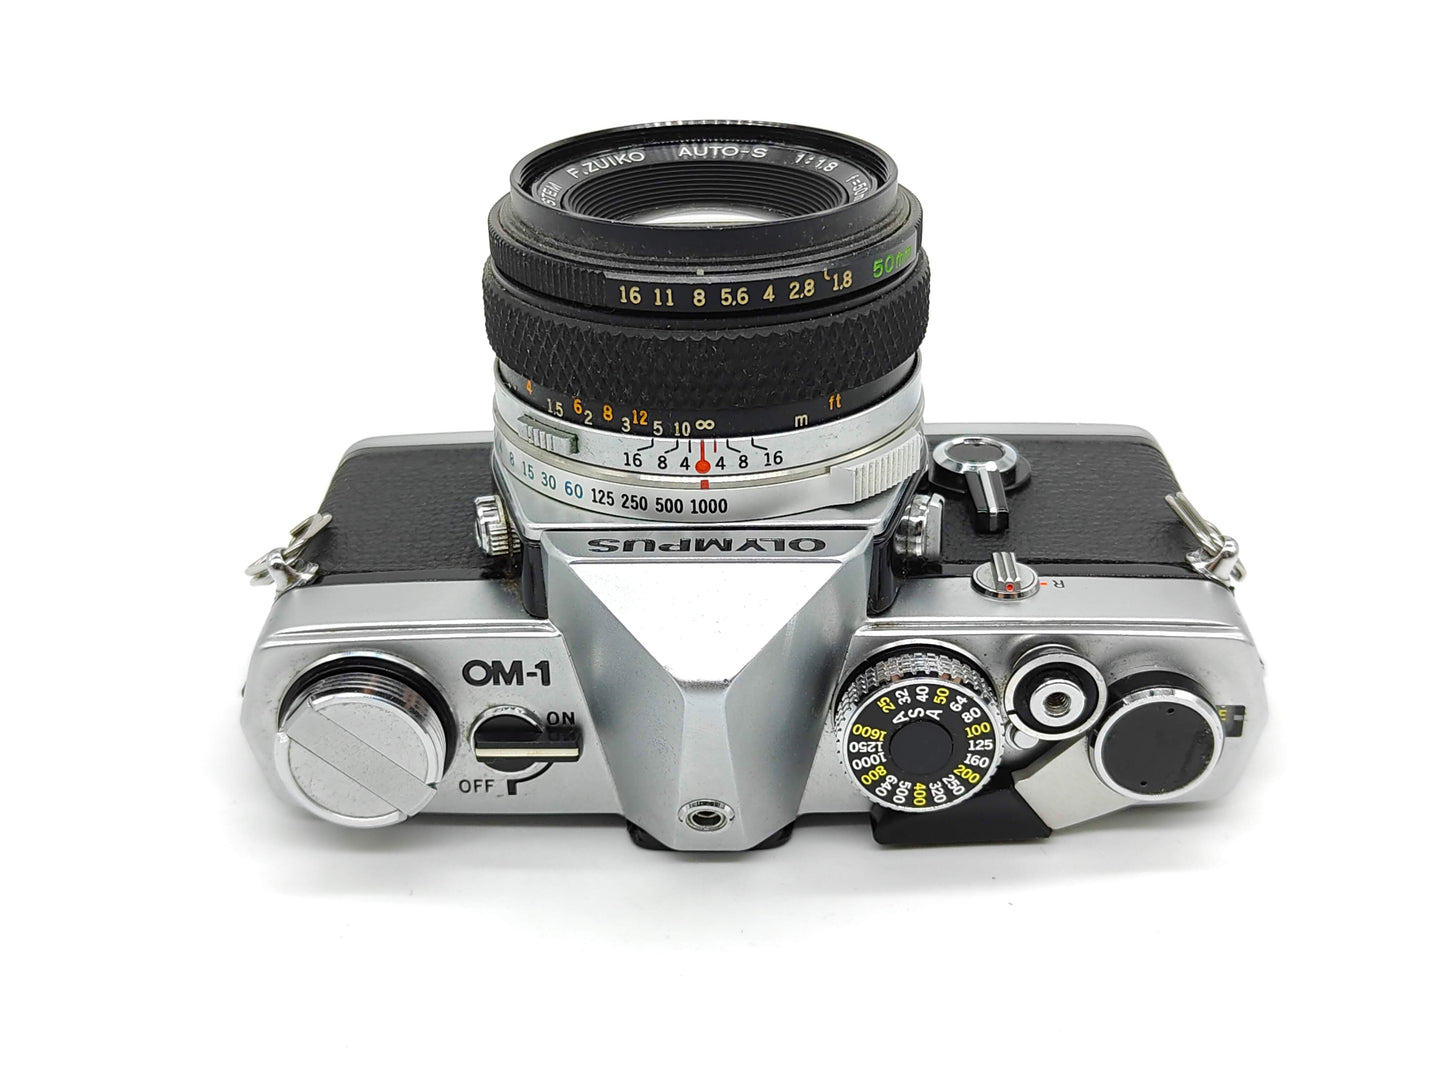 Olympus OM-1 SLR film camera